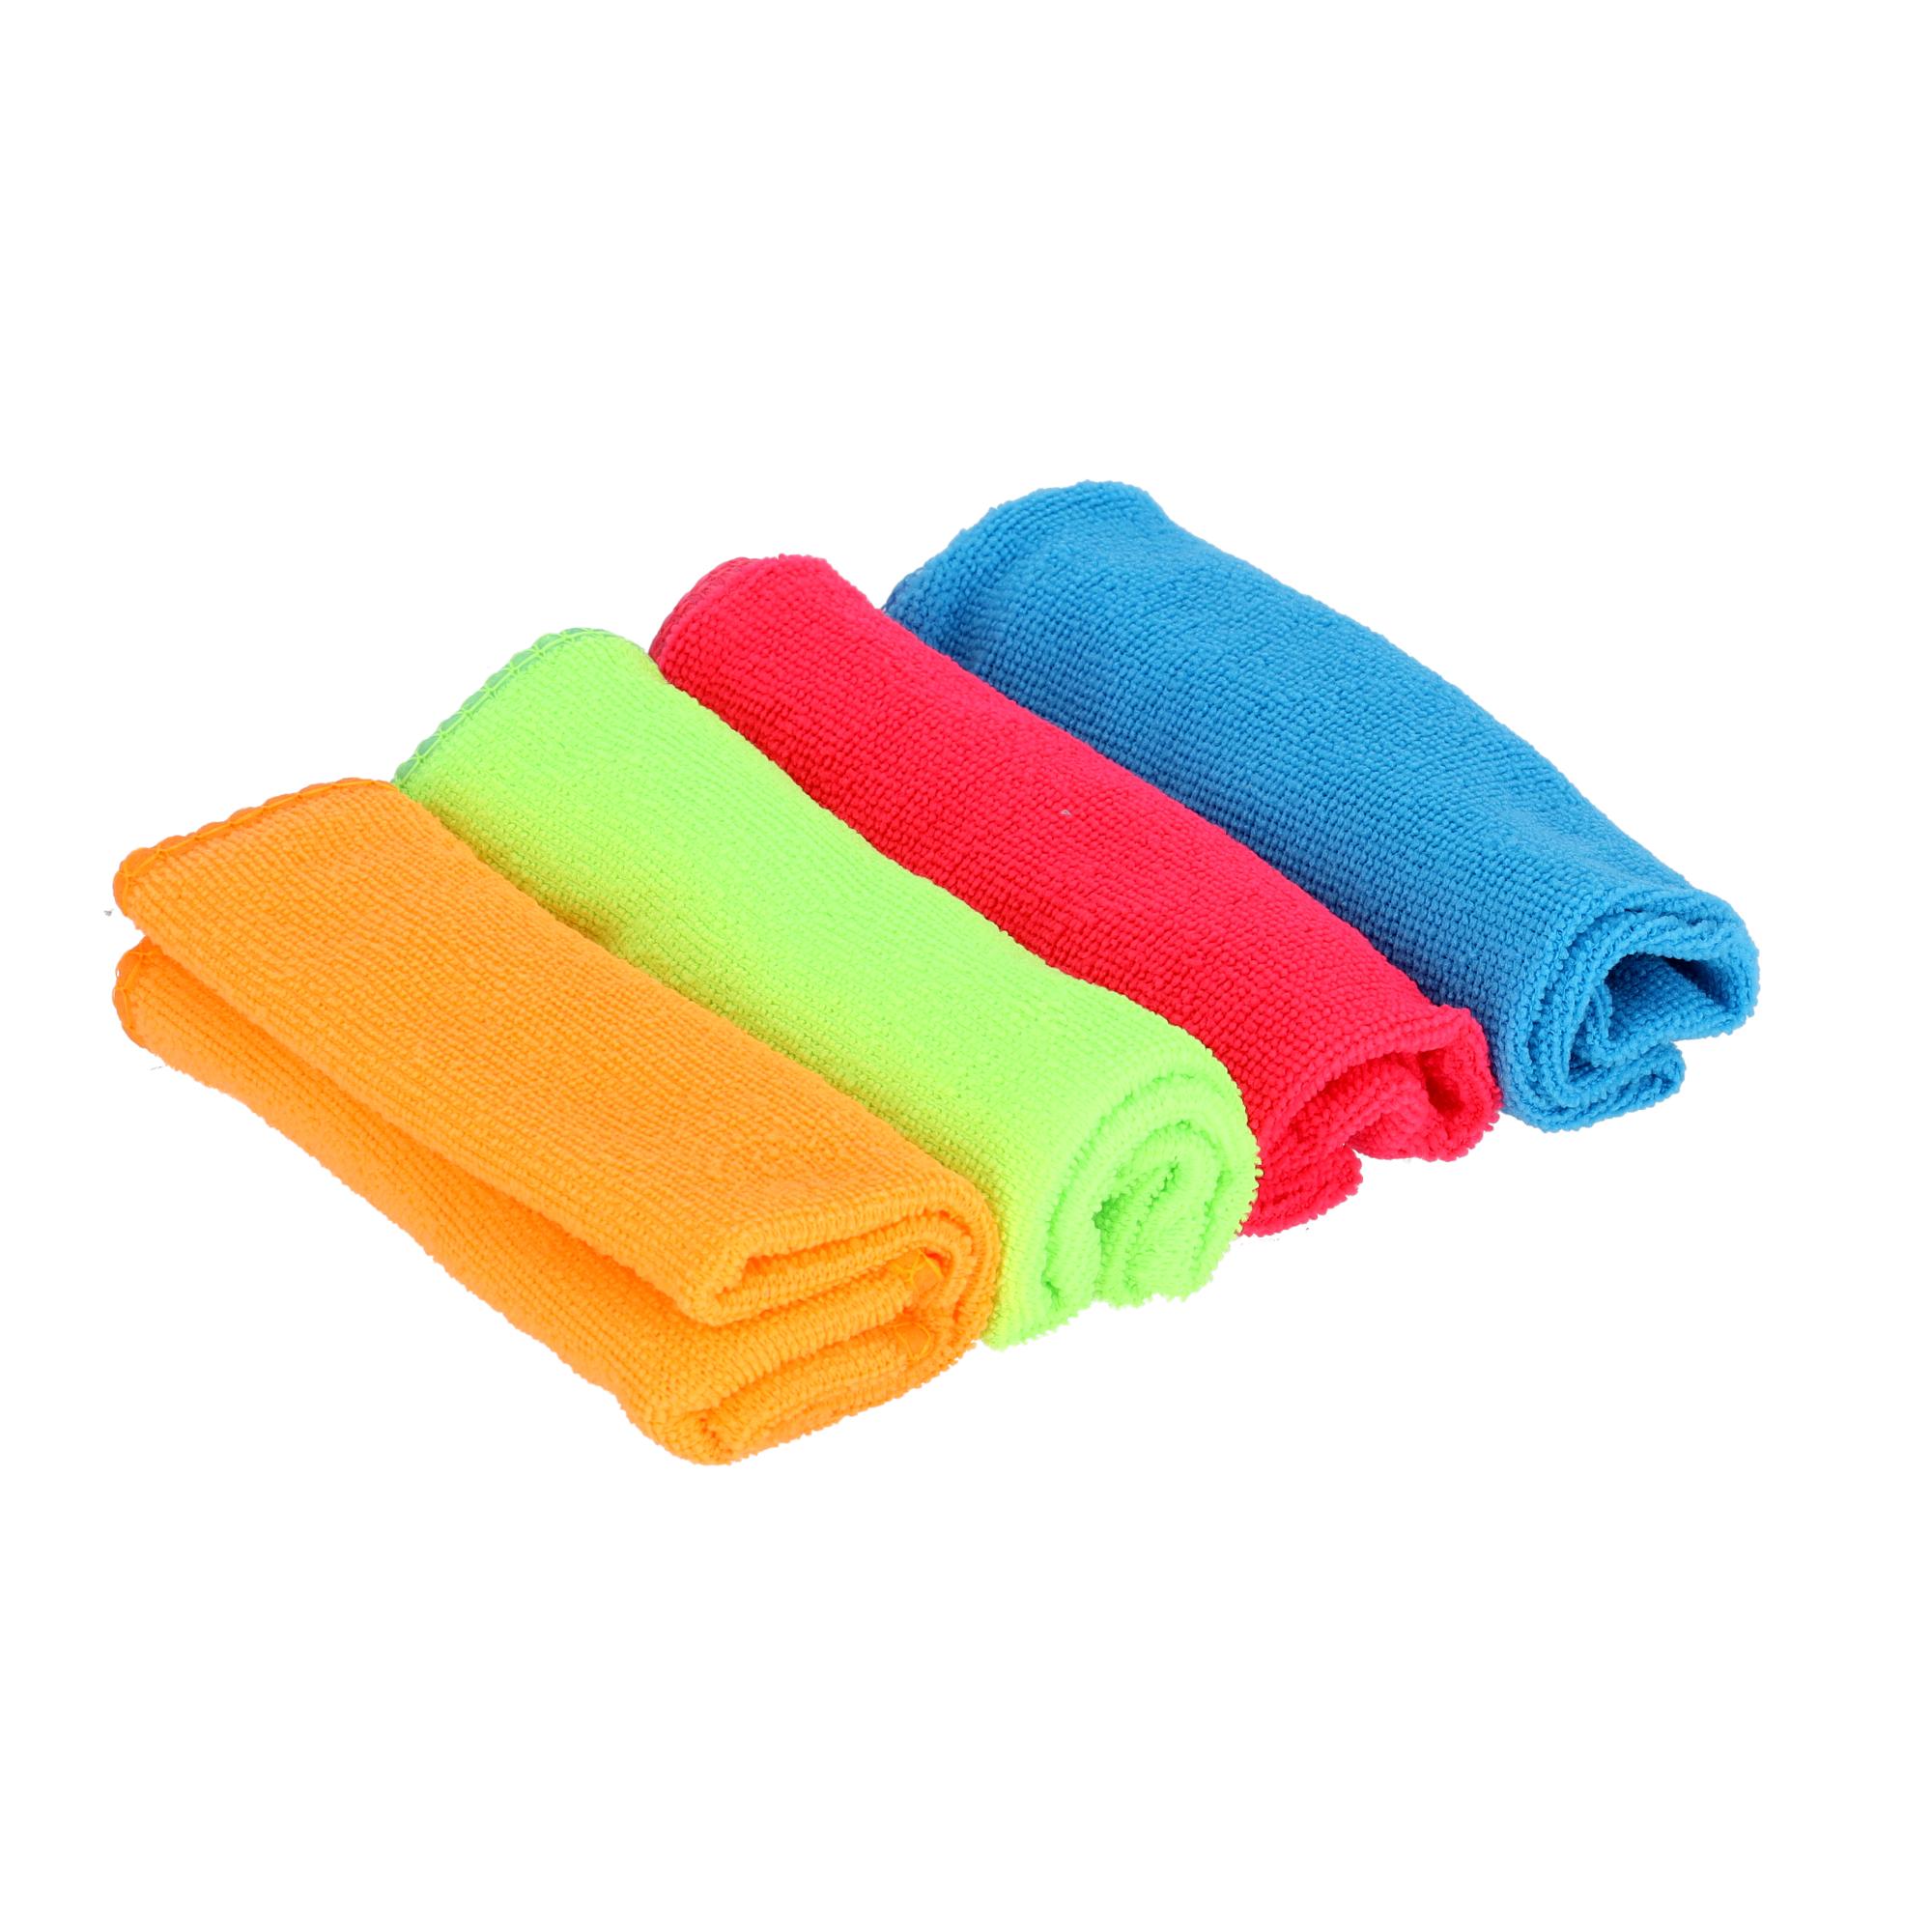 طقم مناشف تجفيف قماشية ( ميكروفايبر ) 4 قطع Royalford - 4Pcs Microfiber Towel Set